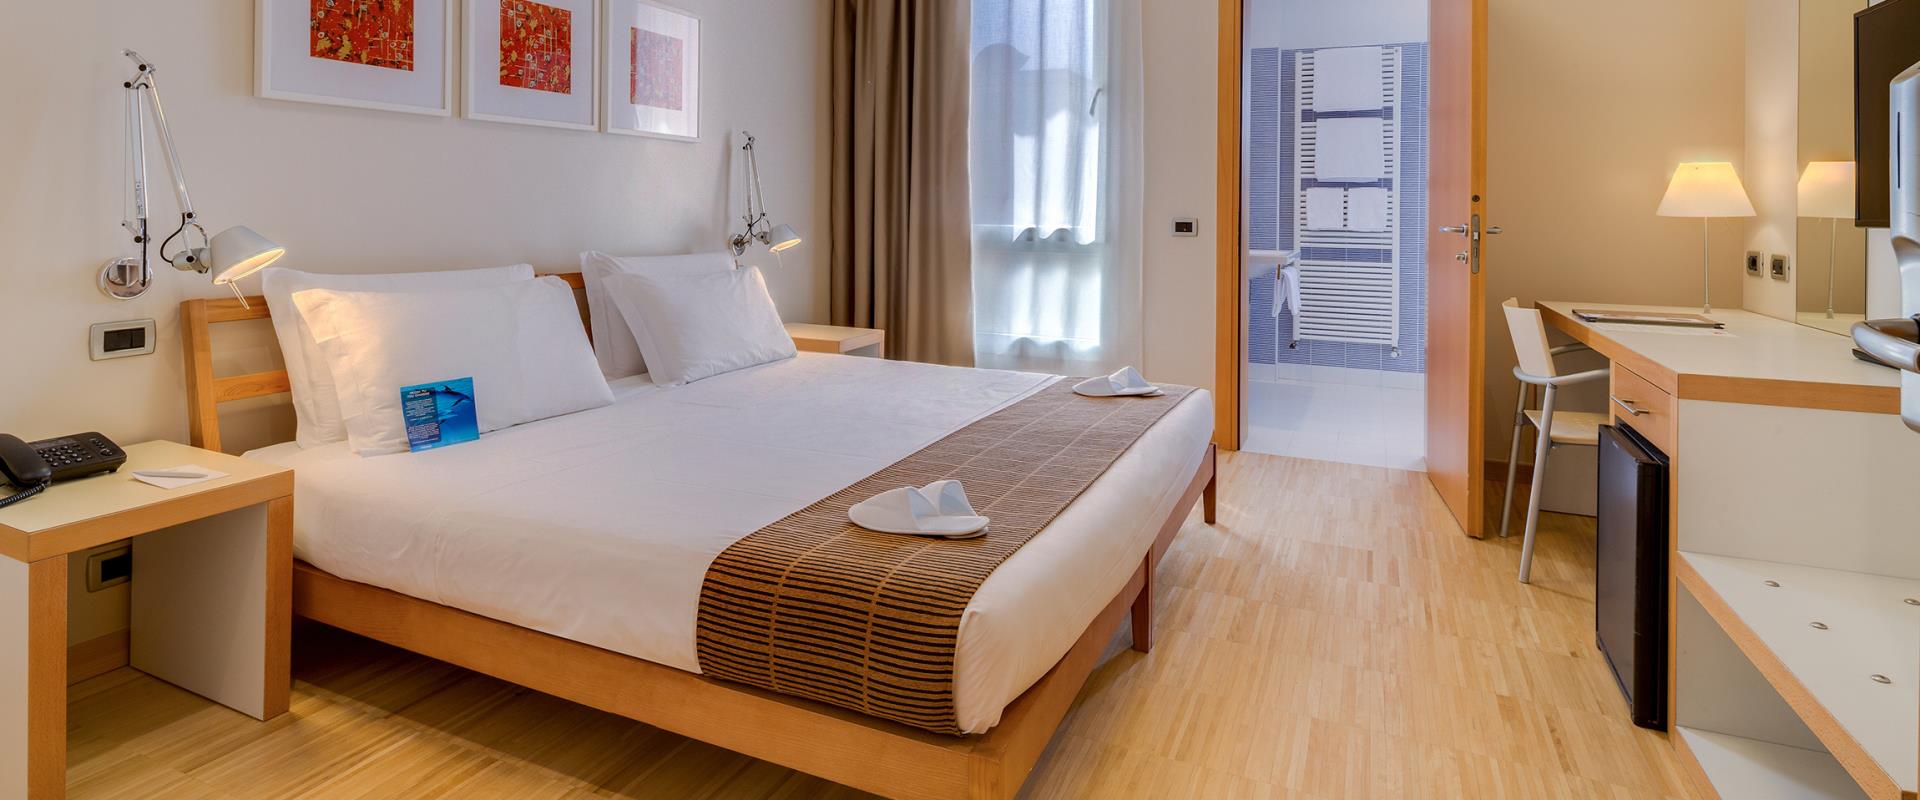 Scopri il comfort delle nostre camere Standard: prenota Best Western Plus Hotel Bologna, 4 stelle vicino a Venezia!